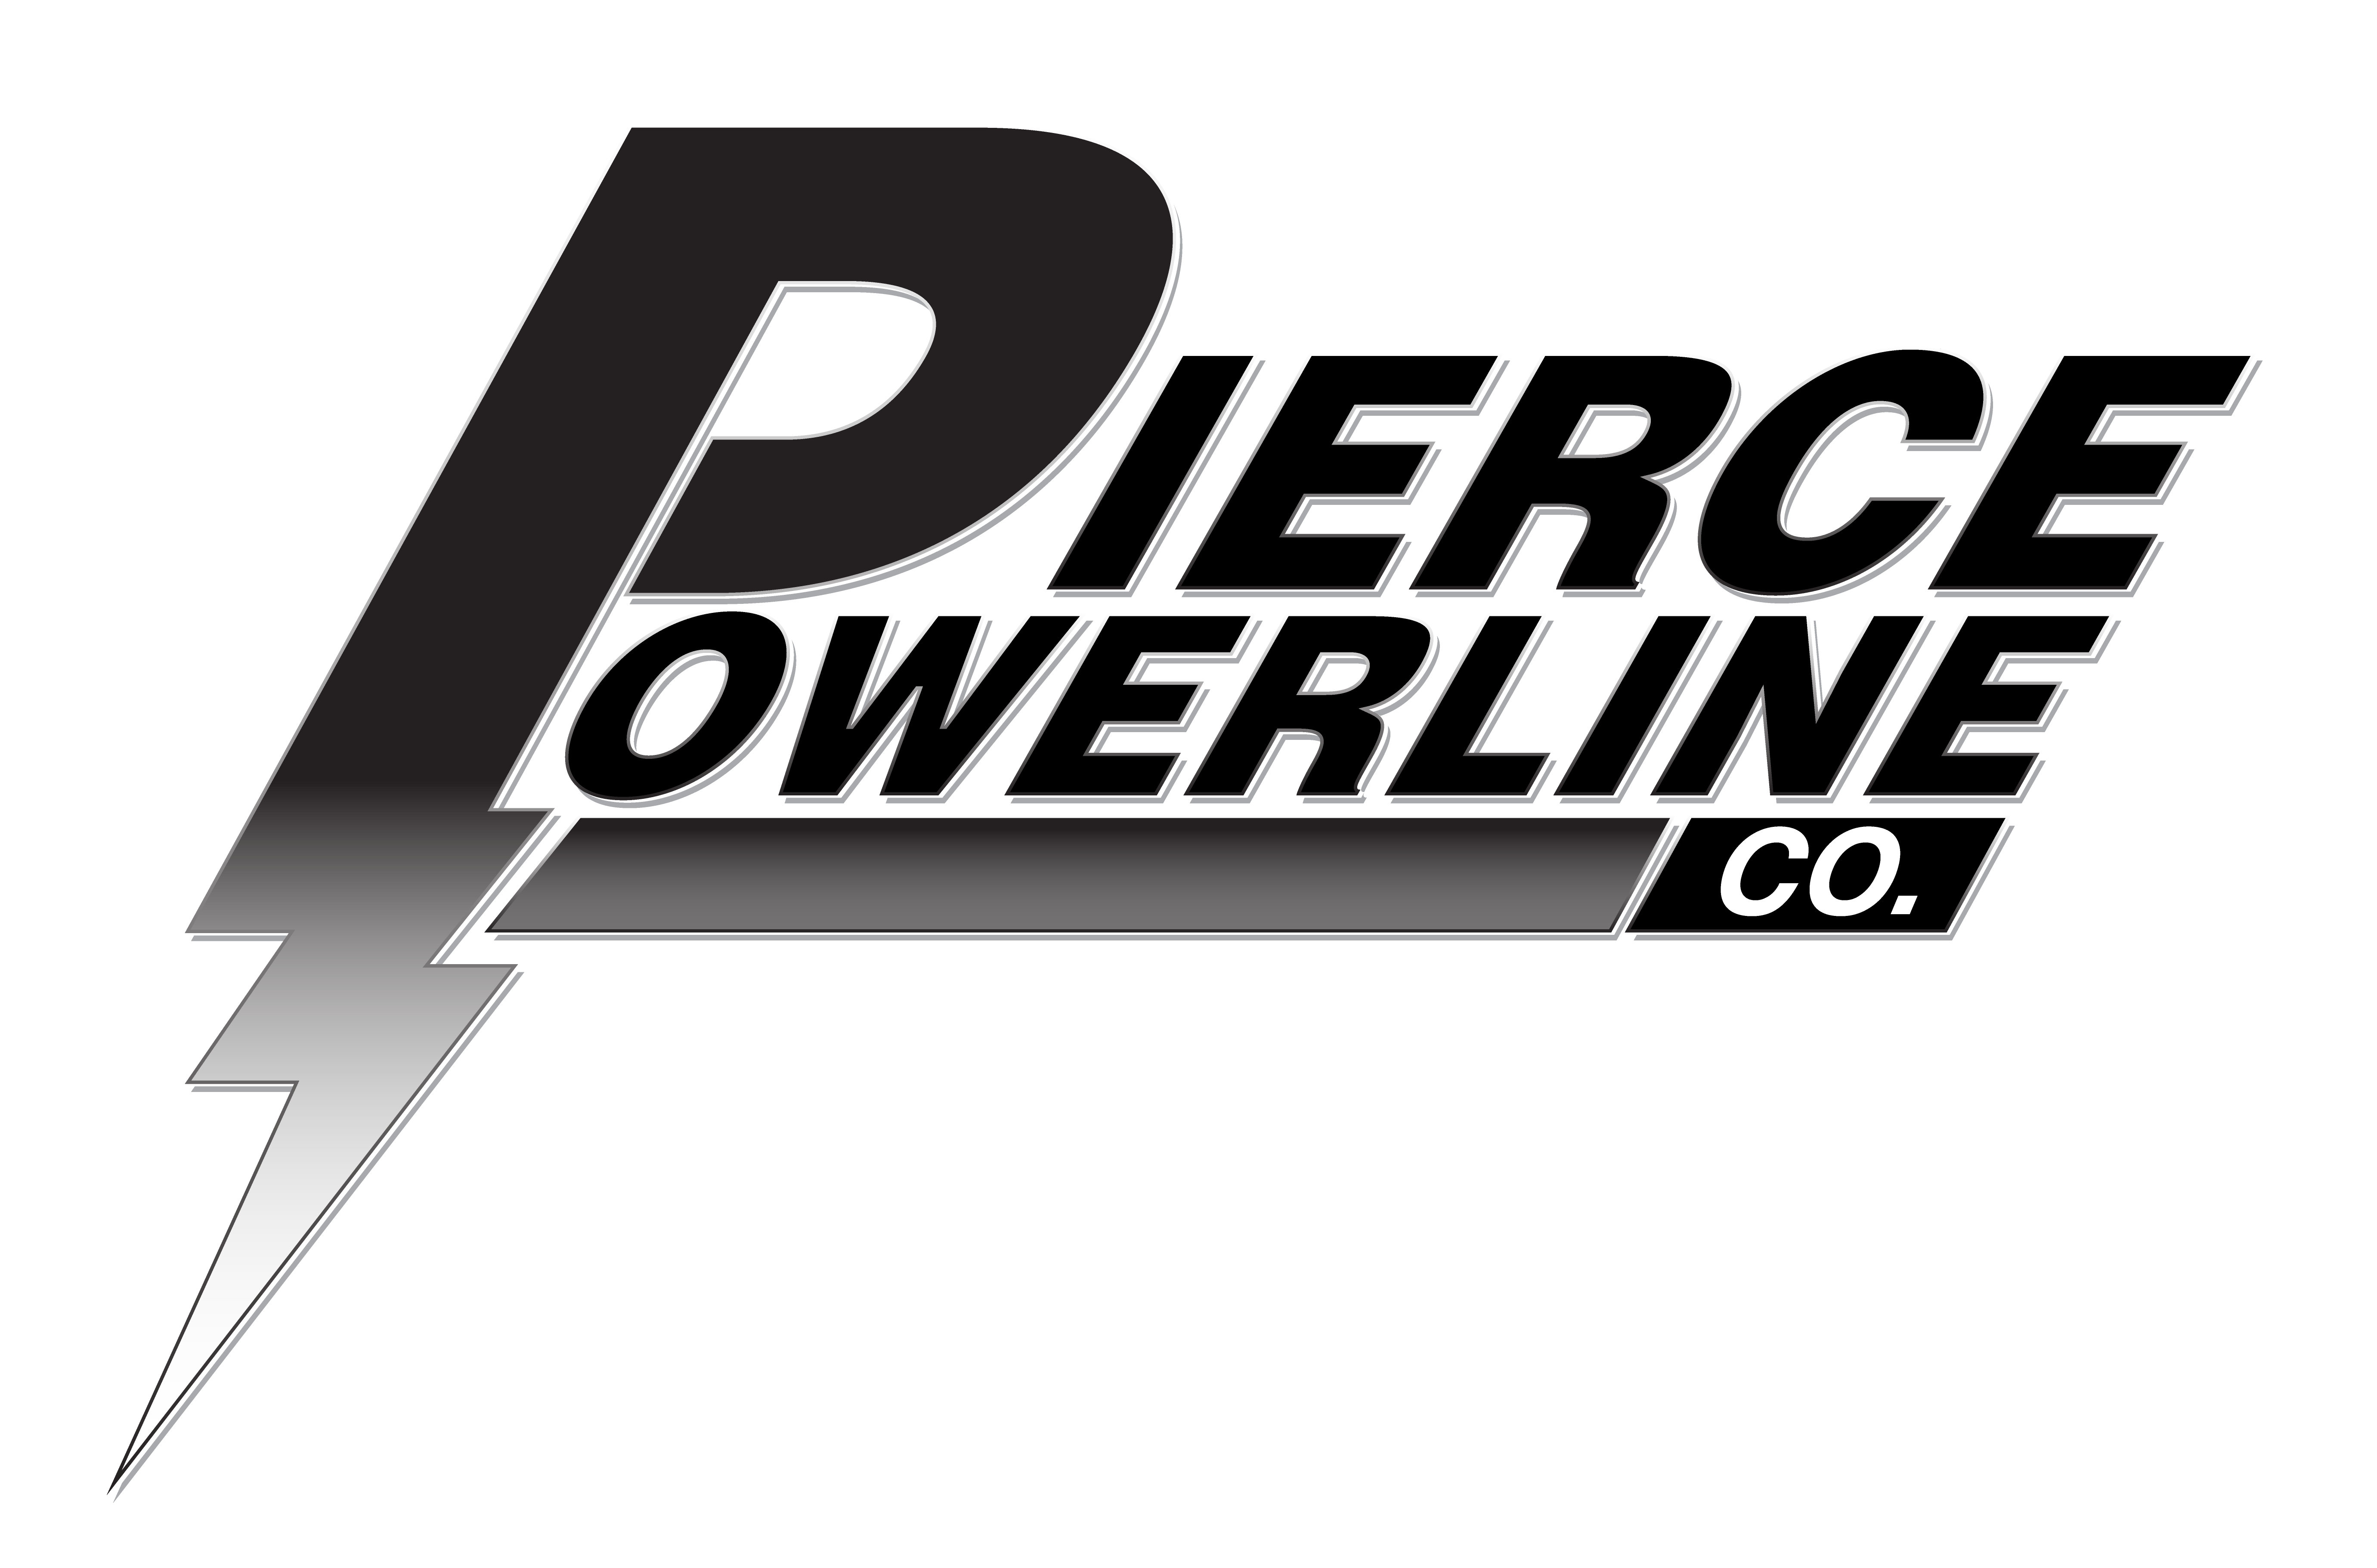 Visit piercepowerline.com/!